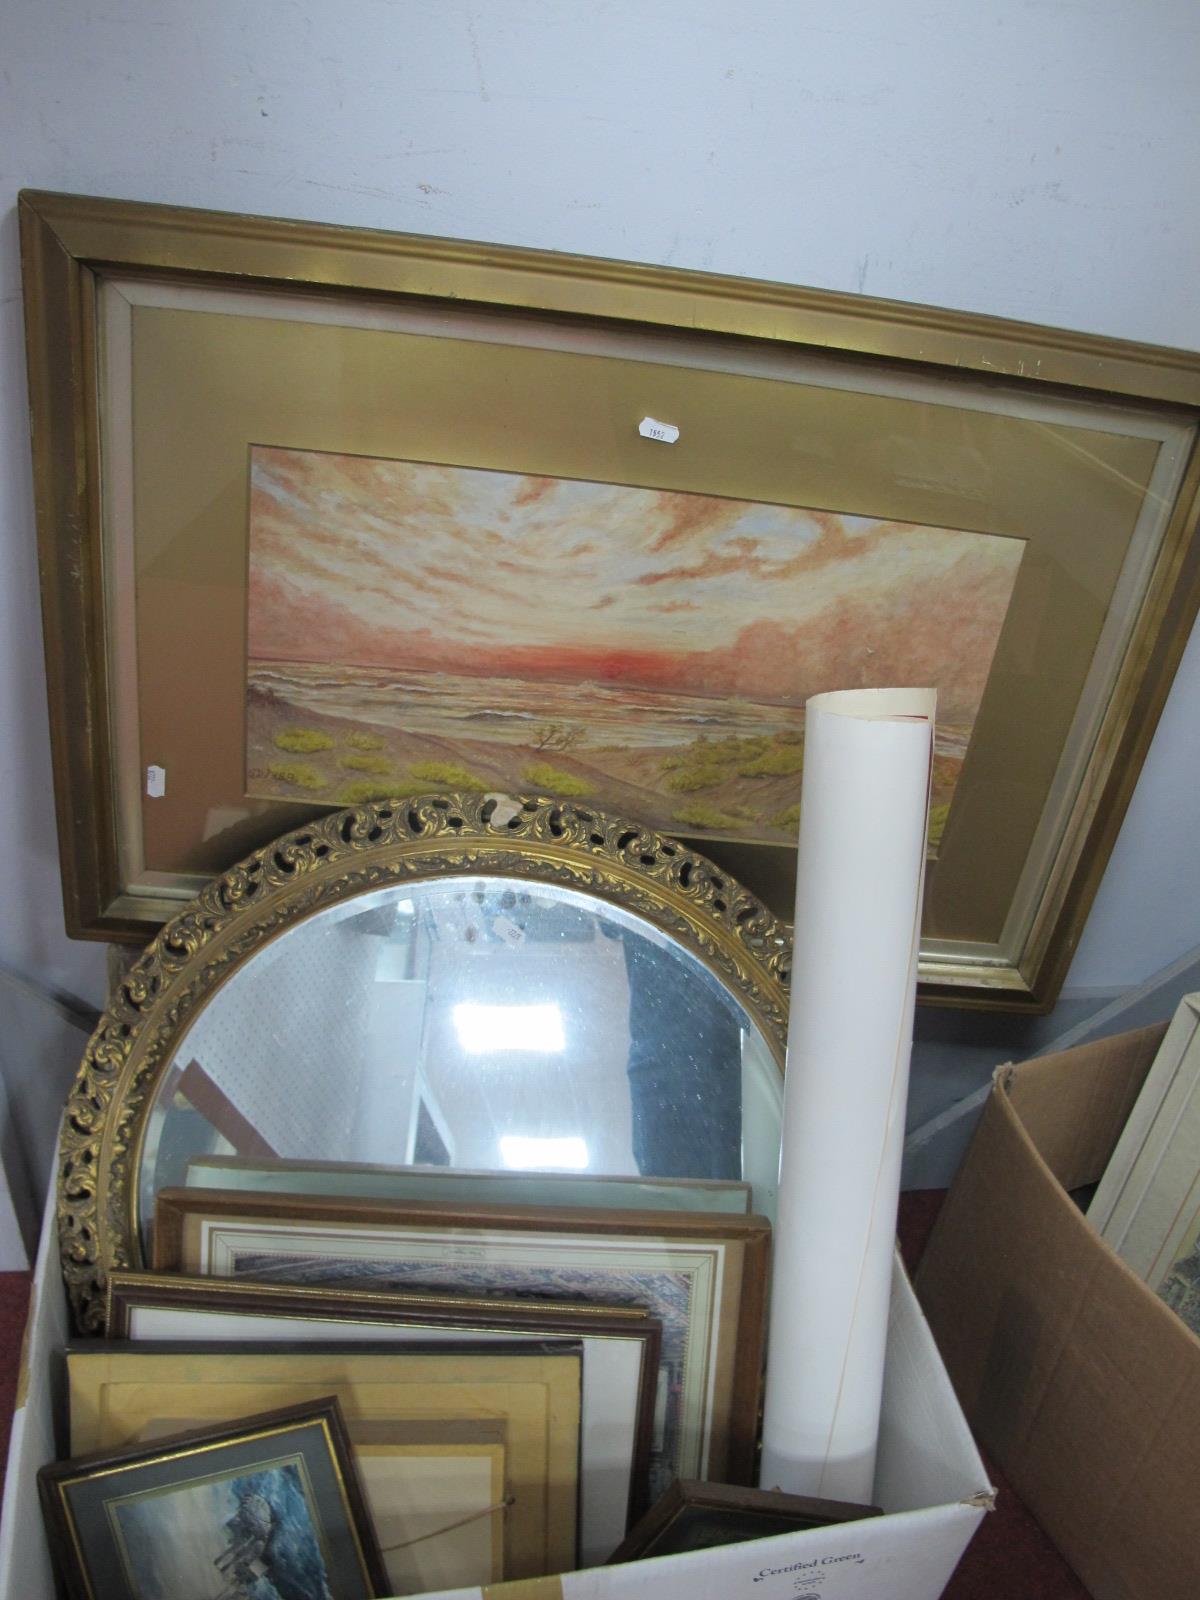 Circular Gilt Framed Mirror, original artwork, prints, Pieck decoupage, etc:- One Box.